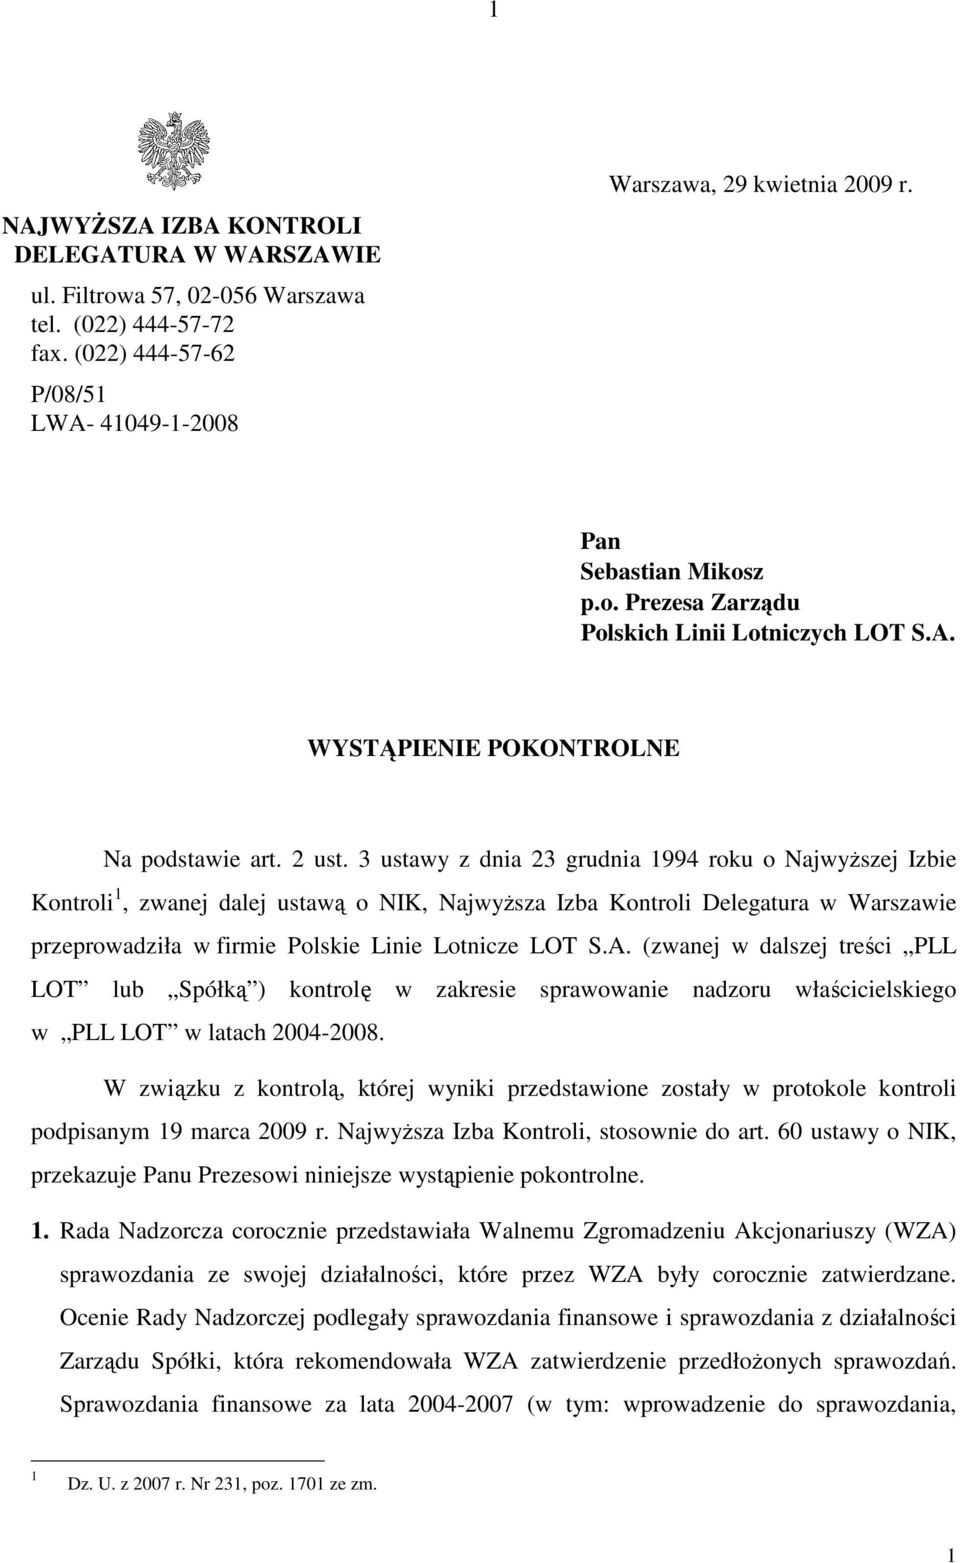 3 ustawy z dnia 23 grudnia 1994 roku o NajwyŜszej Izbie Kontroli 1, zwanej dalej ustawą o NIK, NajwyŜsza Izba Kontroli Delegatura w Warszawie przeprowadziła w firmie Polskie Linie Lotnicze LOT S.A.